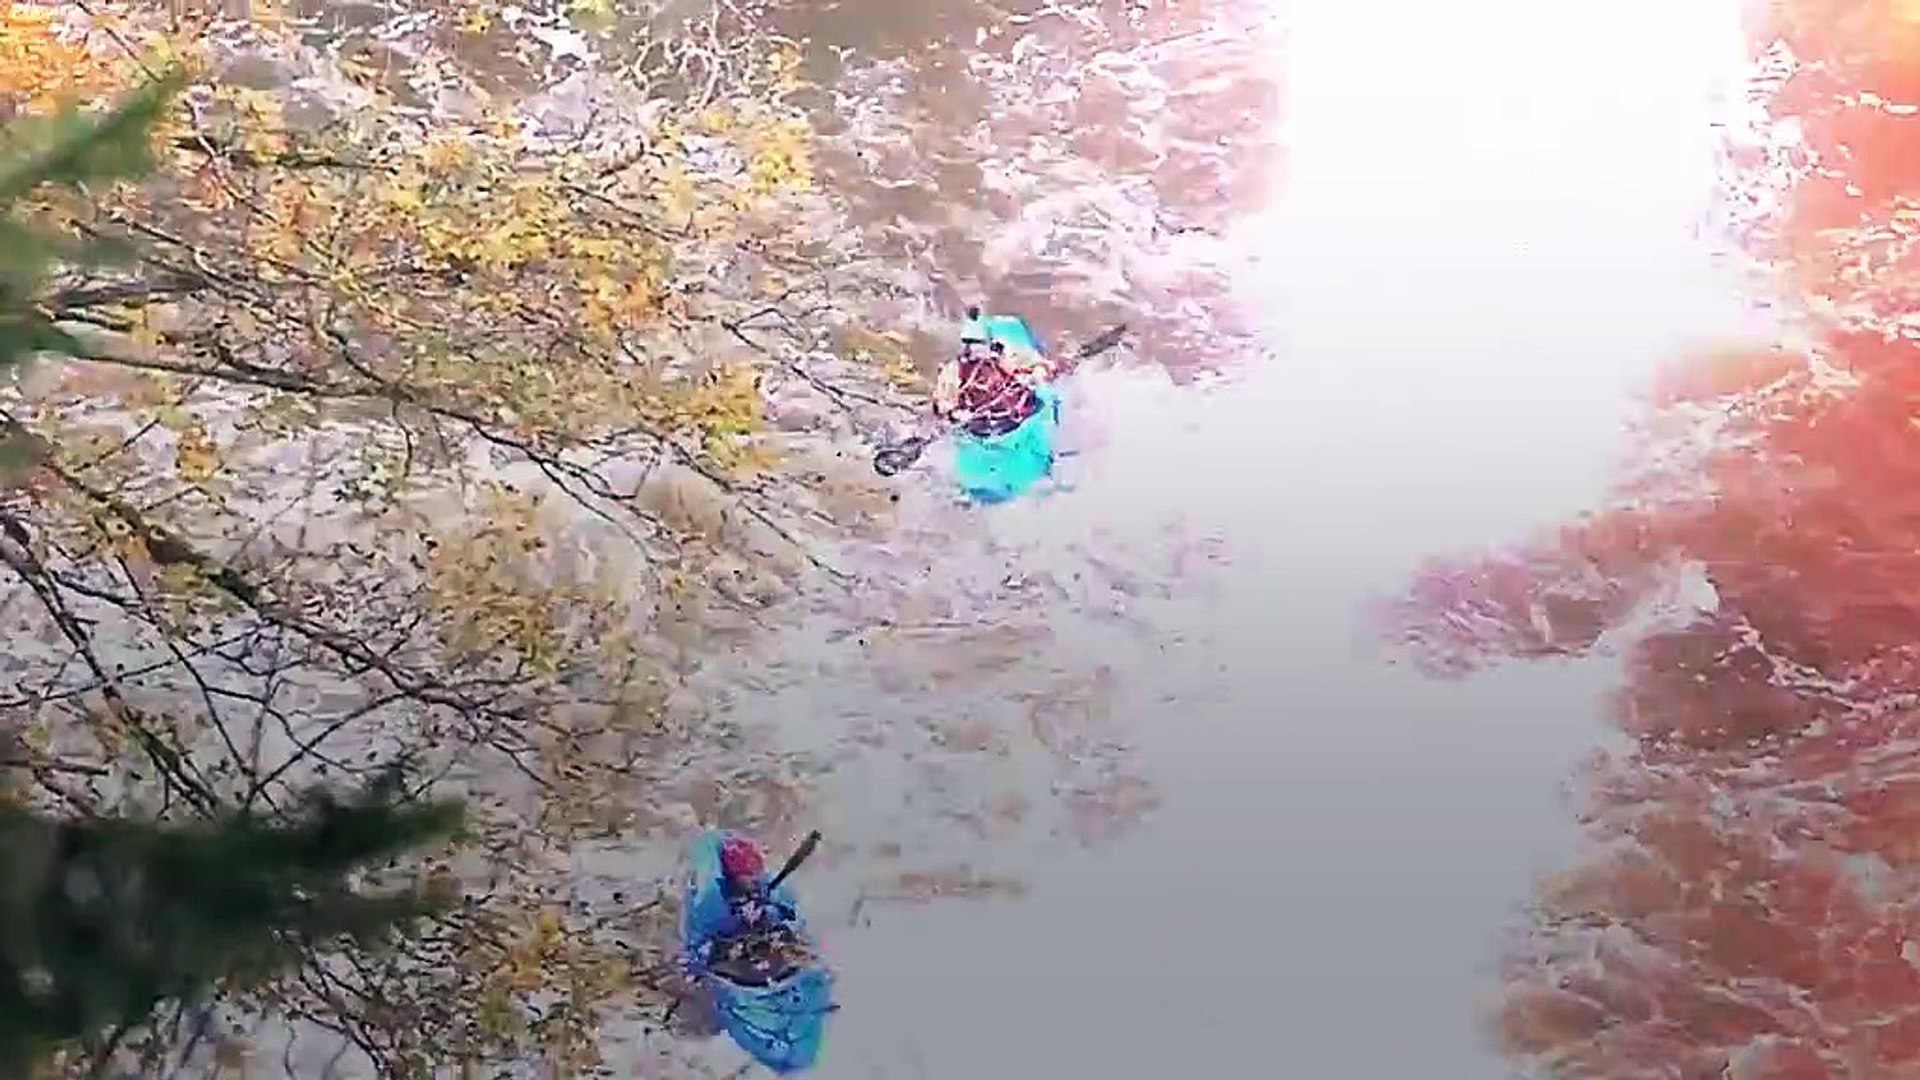 Ils descendent le saut du Doubs en kayak, une première - Vidéo Dailymotion